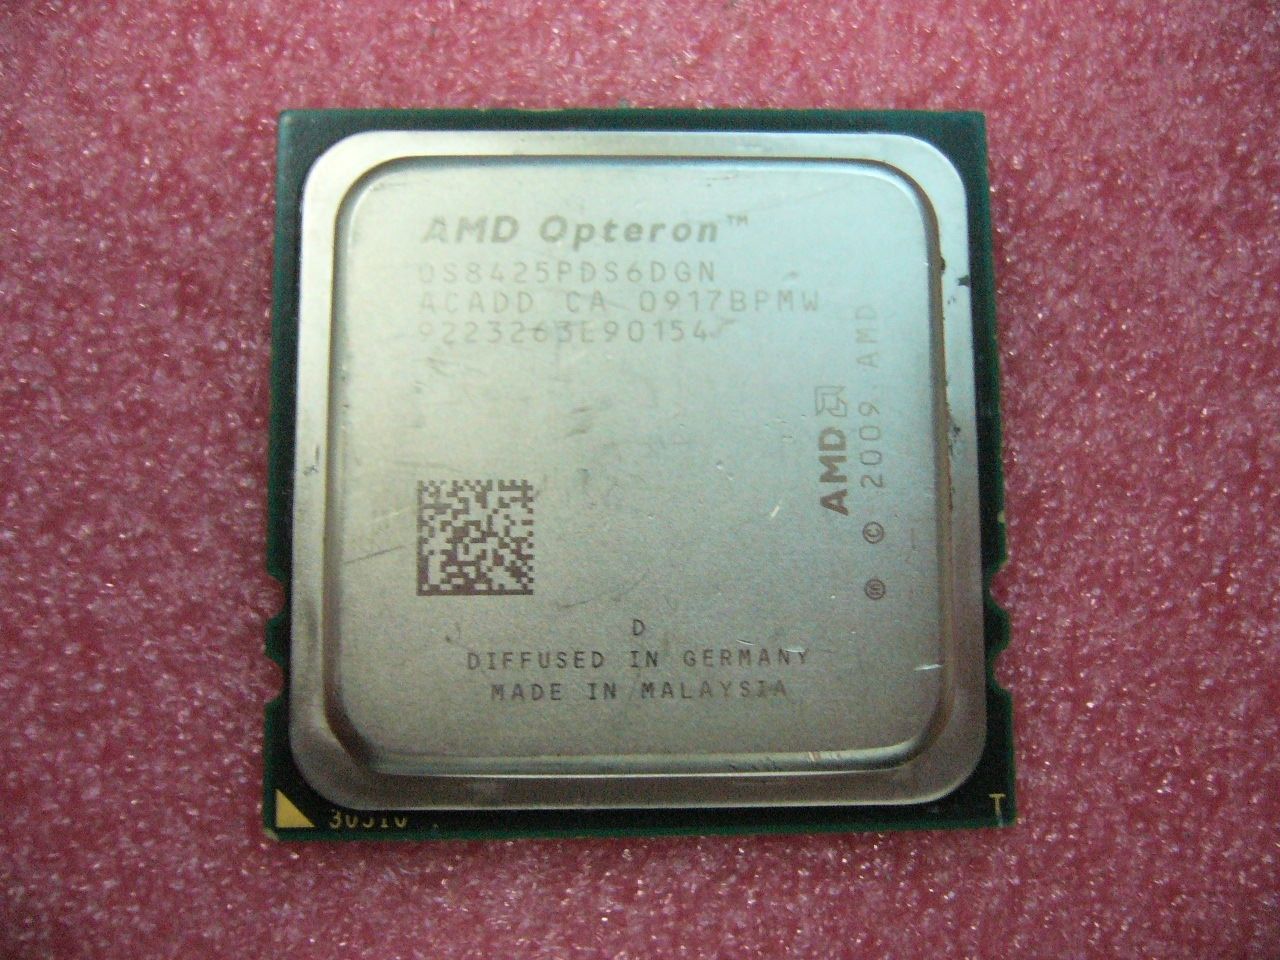 QTY 1x AMD Opteron 8425 2.1 GHz Six Core (OS8425PDS6DGN) CPU Socket F 1207 - zum Schließen ins Bild klicken